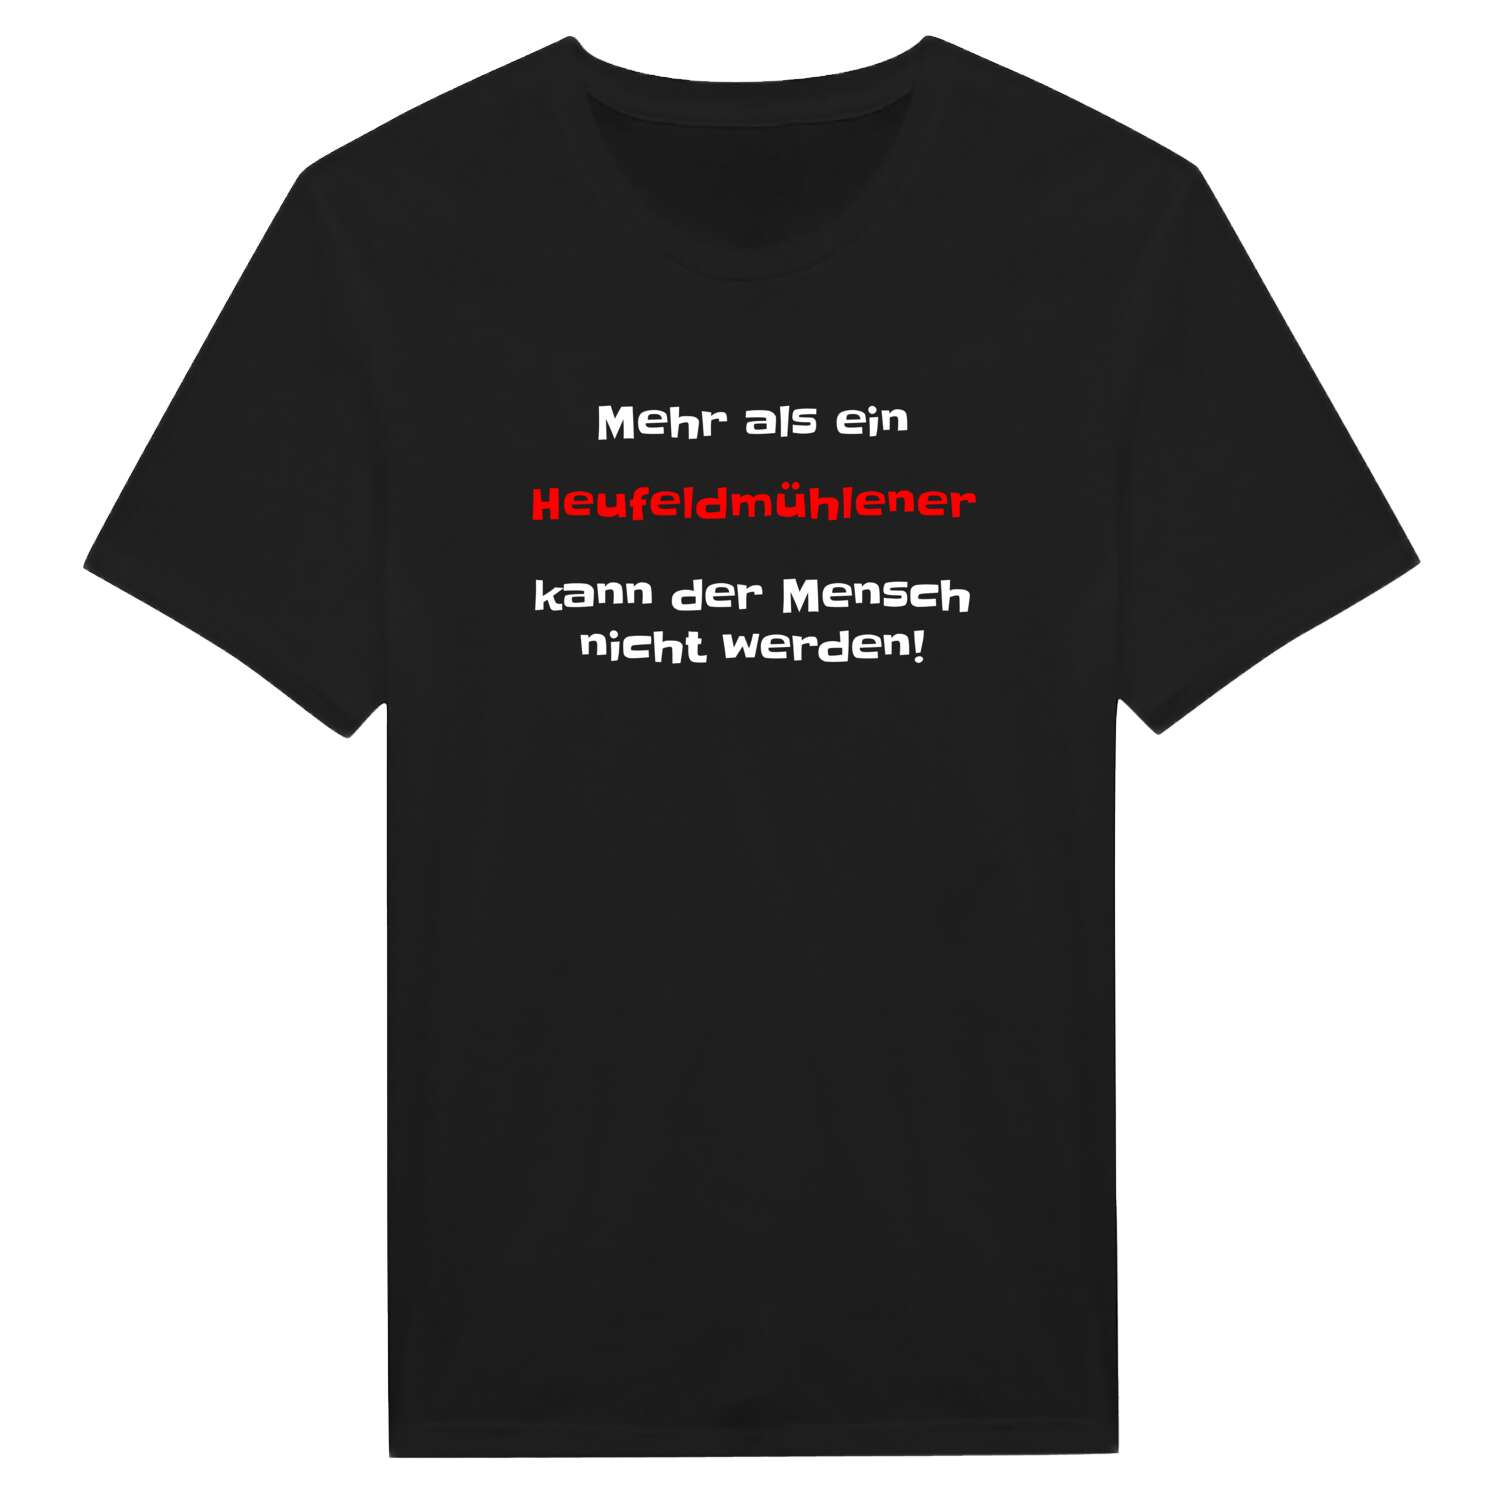 Heufeldmühle T-Shirt »Mehr als ein«